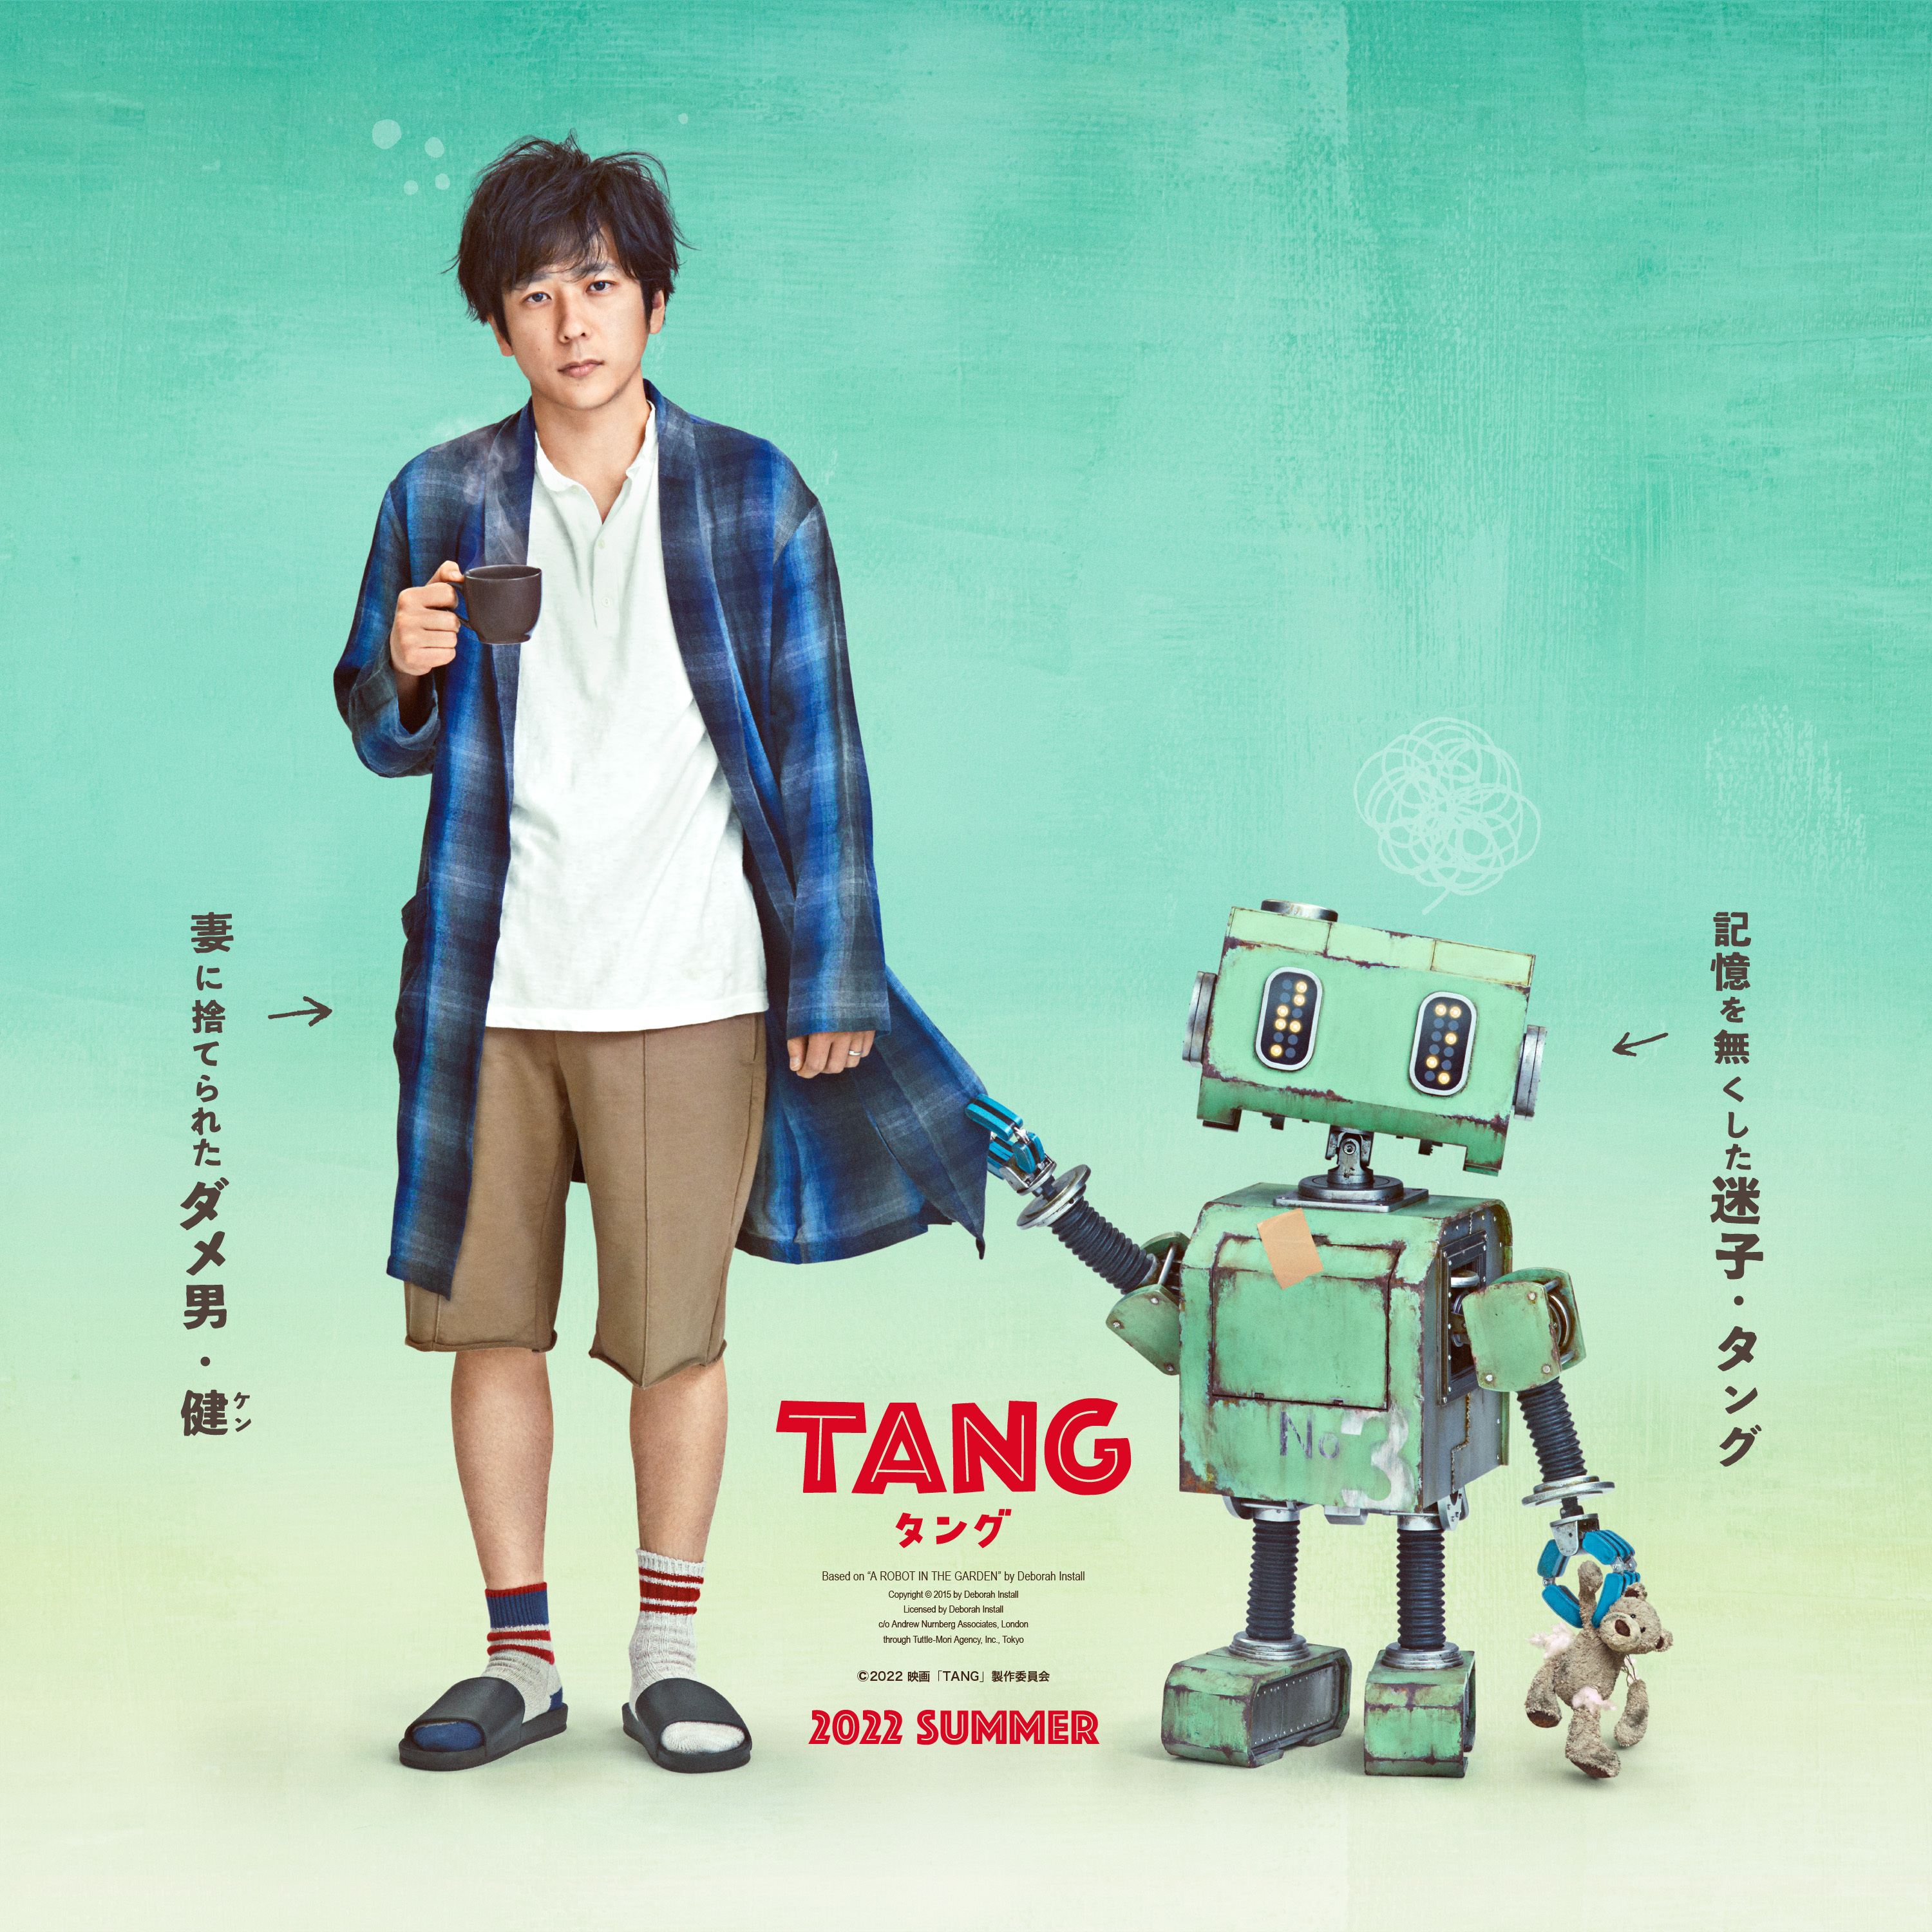 二宮和也とロボットの 共演 初映像を公開 映画 Tang タング 超特報 ファーストルックを解禁 Musicman